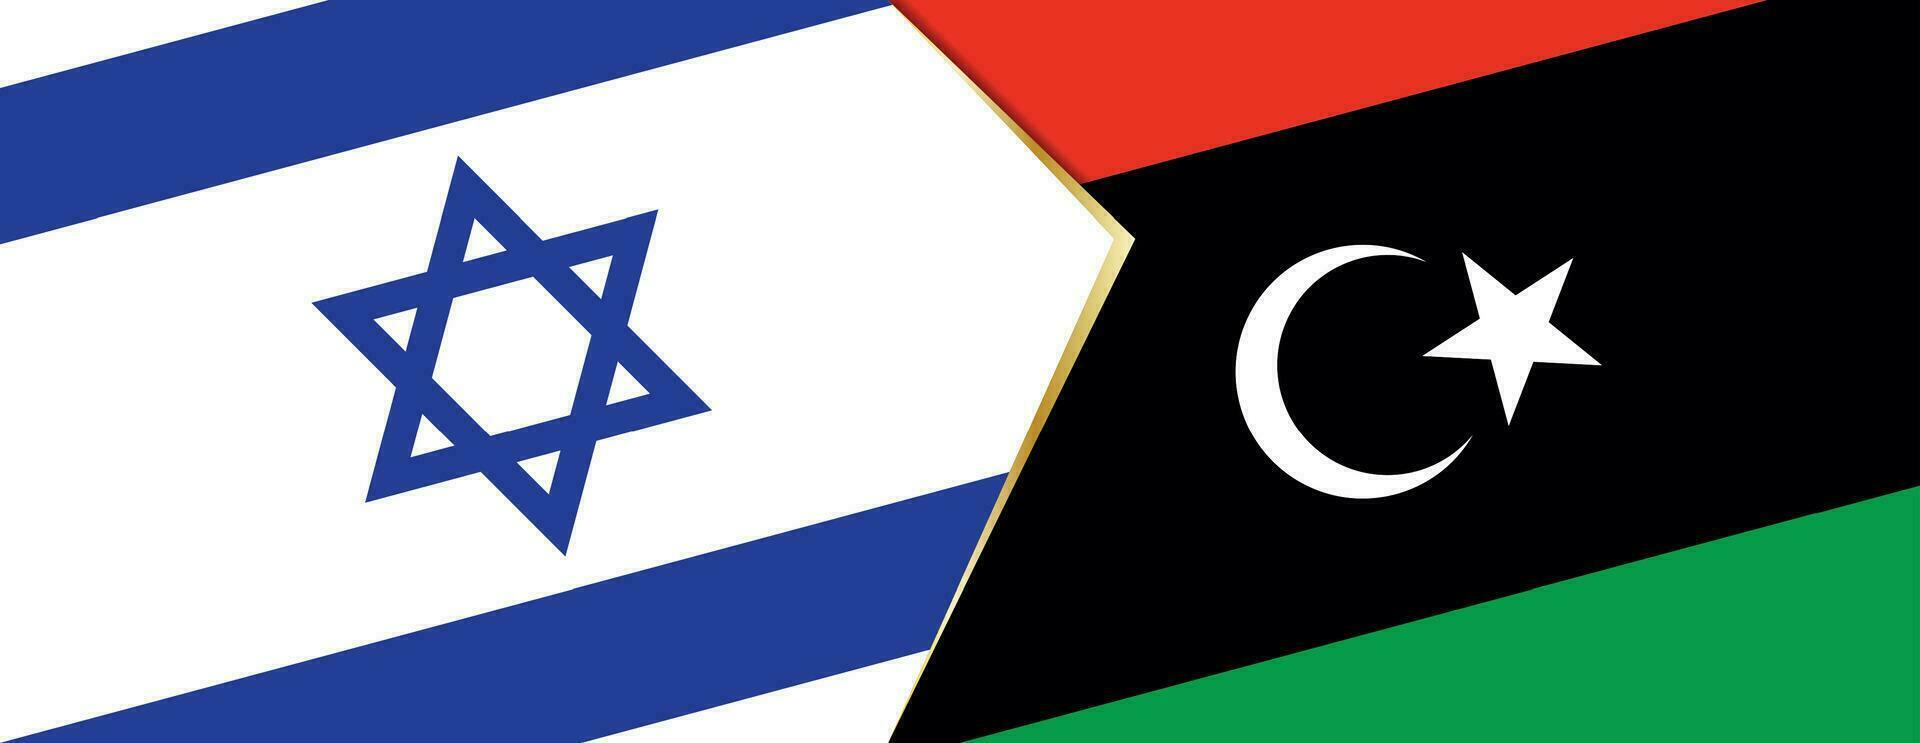 Israël et Libye drapeaux, deux vecteur drapeaux.